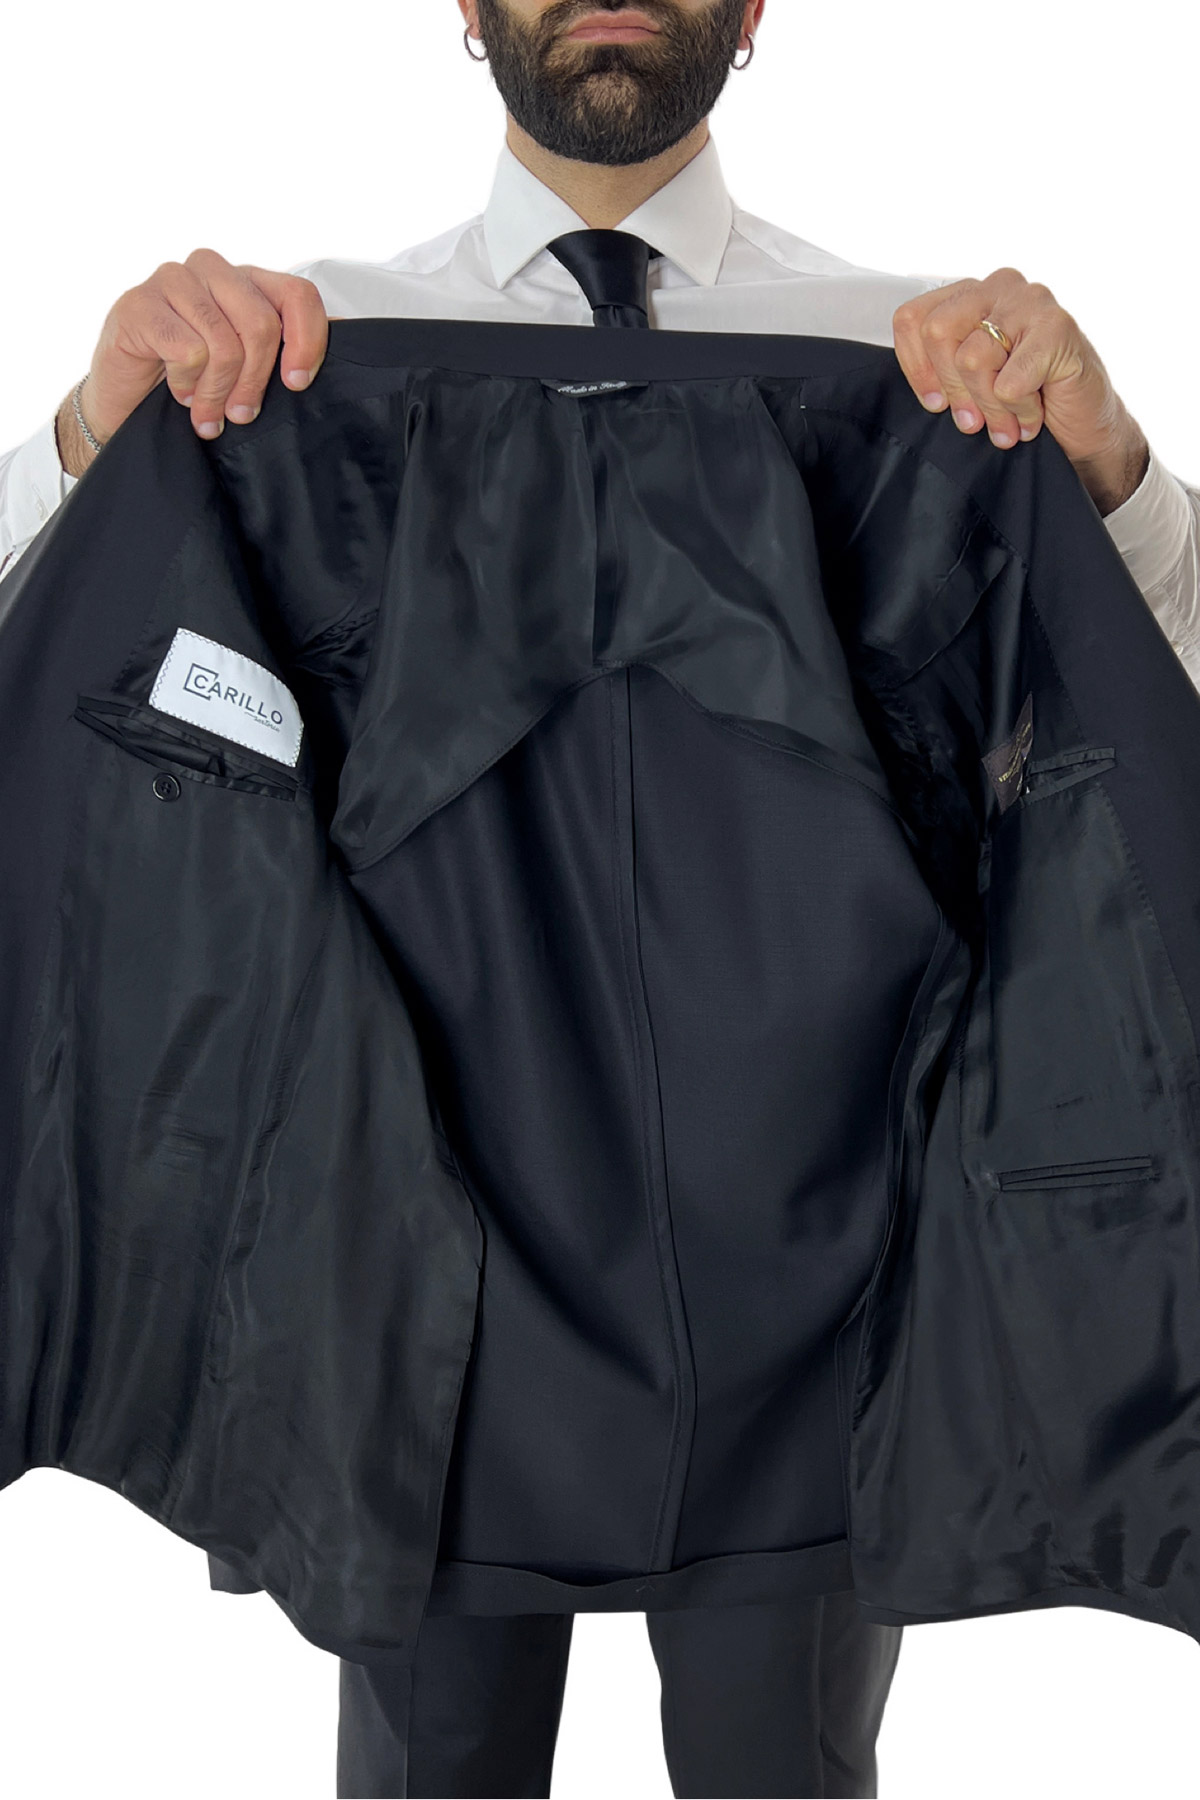 Abito uomo nero con giacca monopetto e pantalone vita alta doppia pinces fresco lana super 130’s Vitale Barberis Canonico